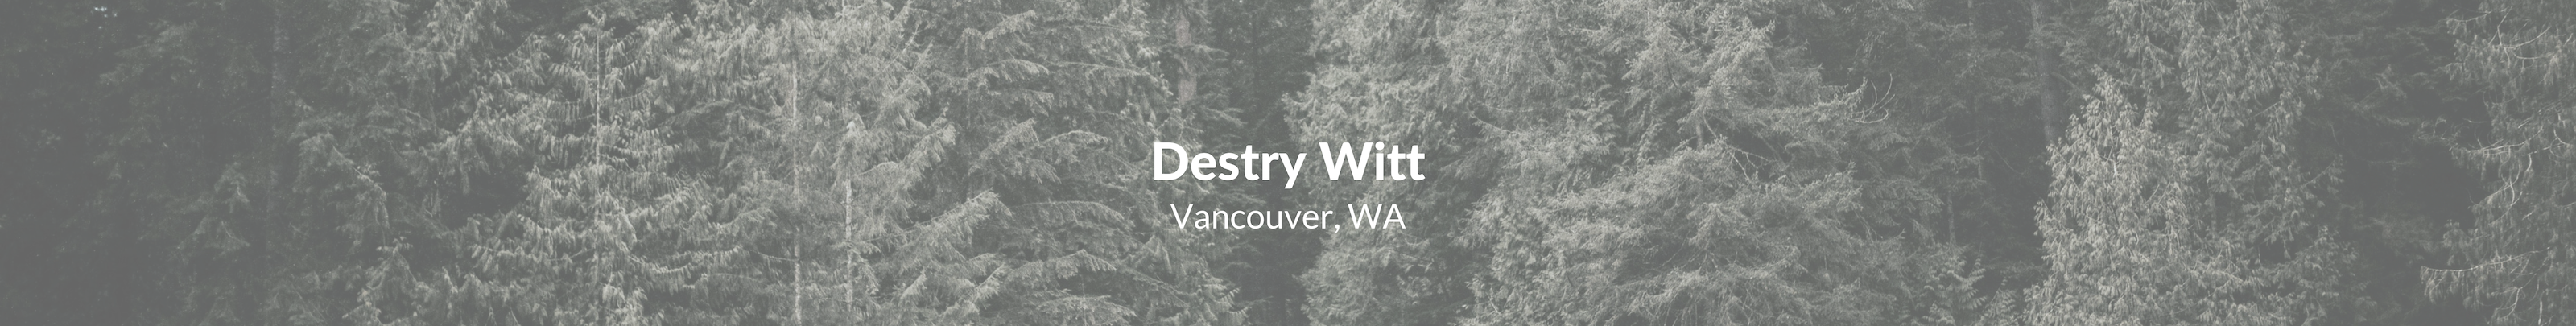 Destry Witt's profile banner